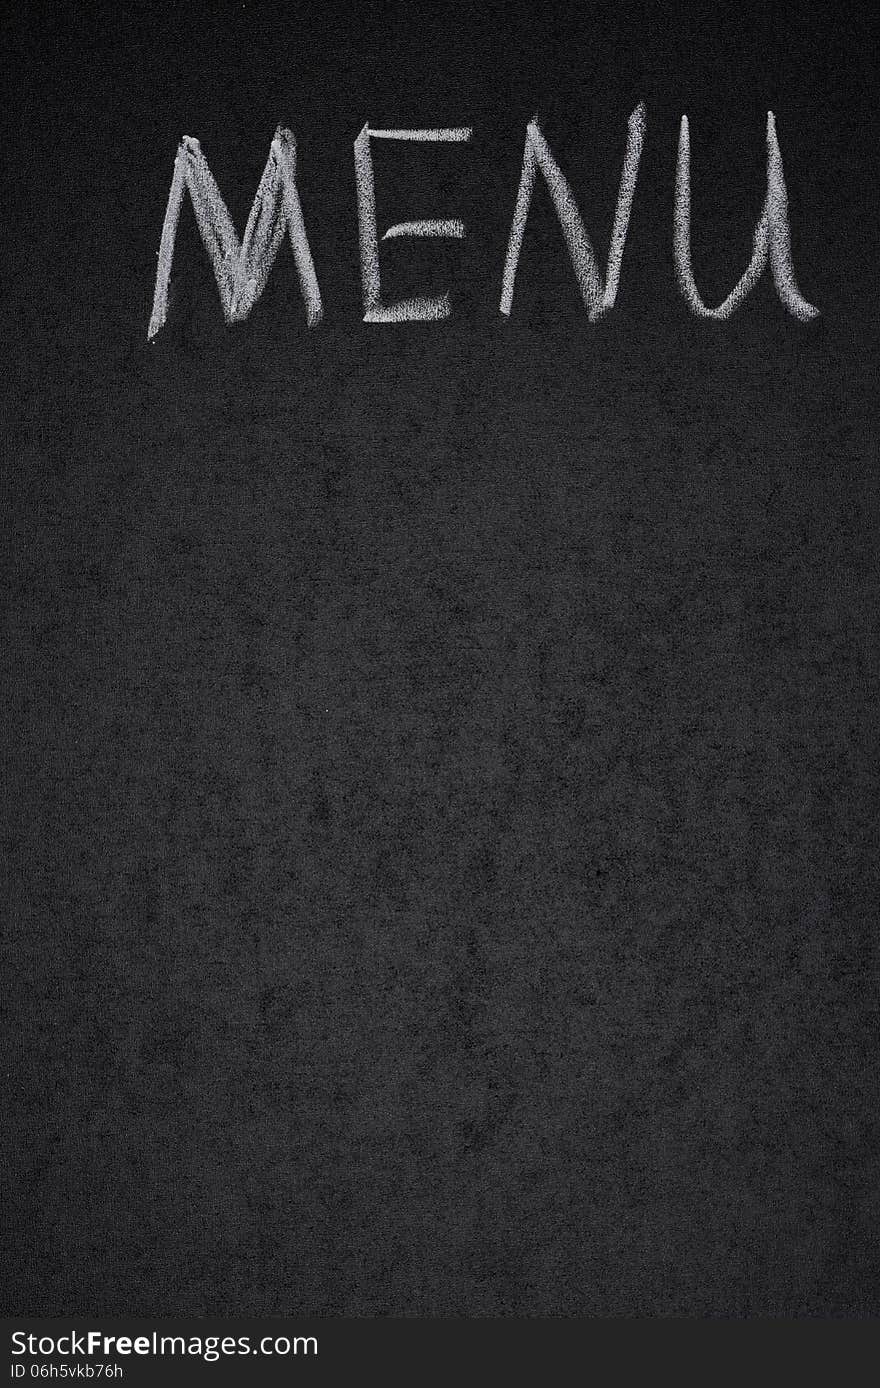 Menu title is written white chalk on a blackboard, vertical